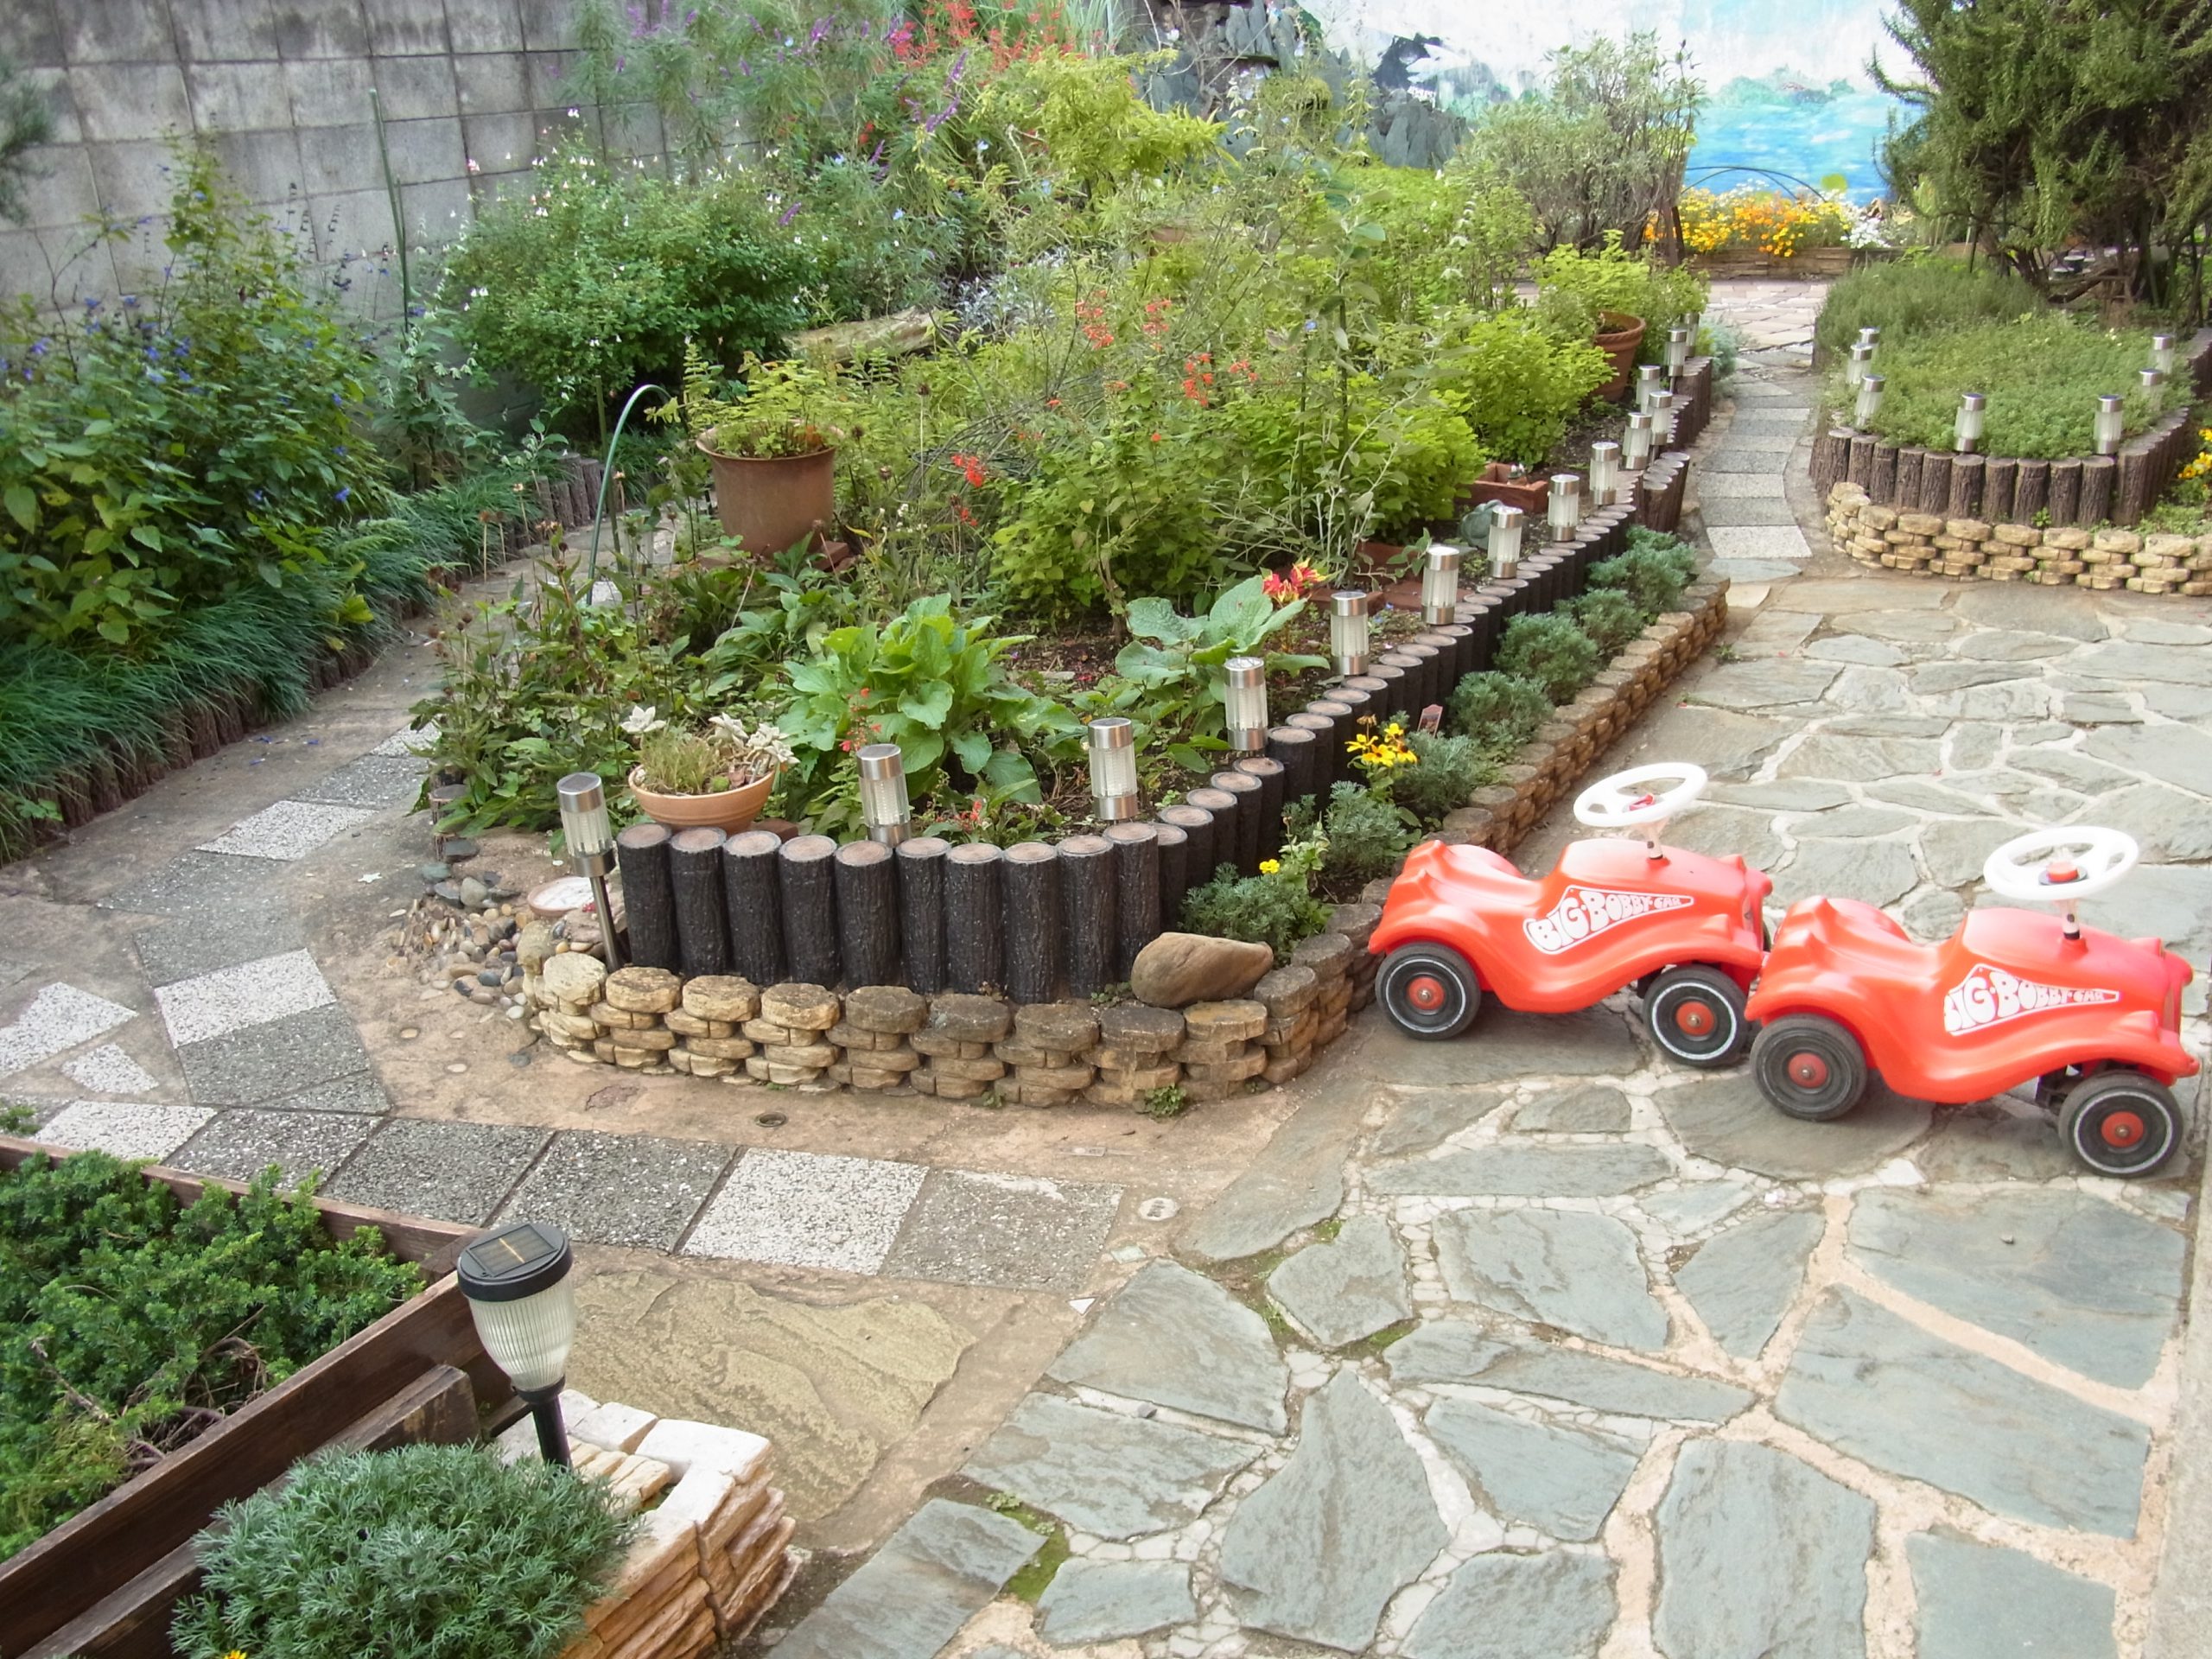 日暮里校のシャレイスイスミニのお庭に、子供が乗って遊ぶ車が置いてあります。